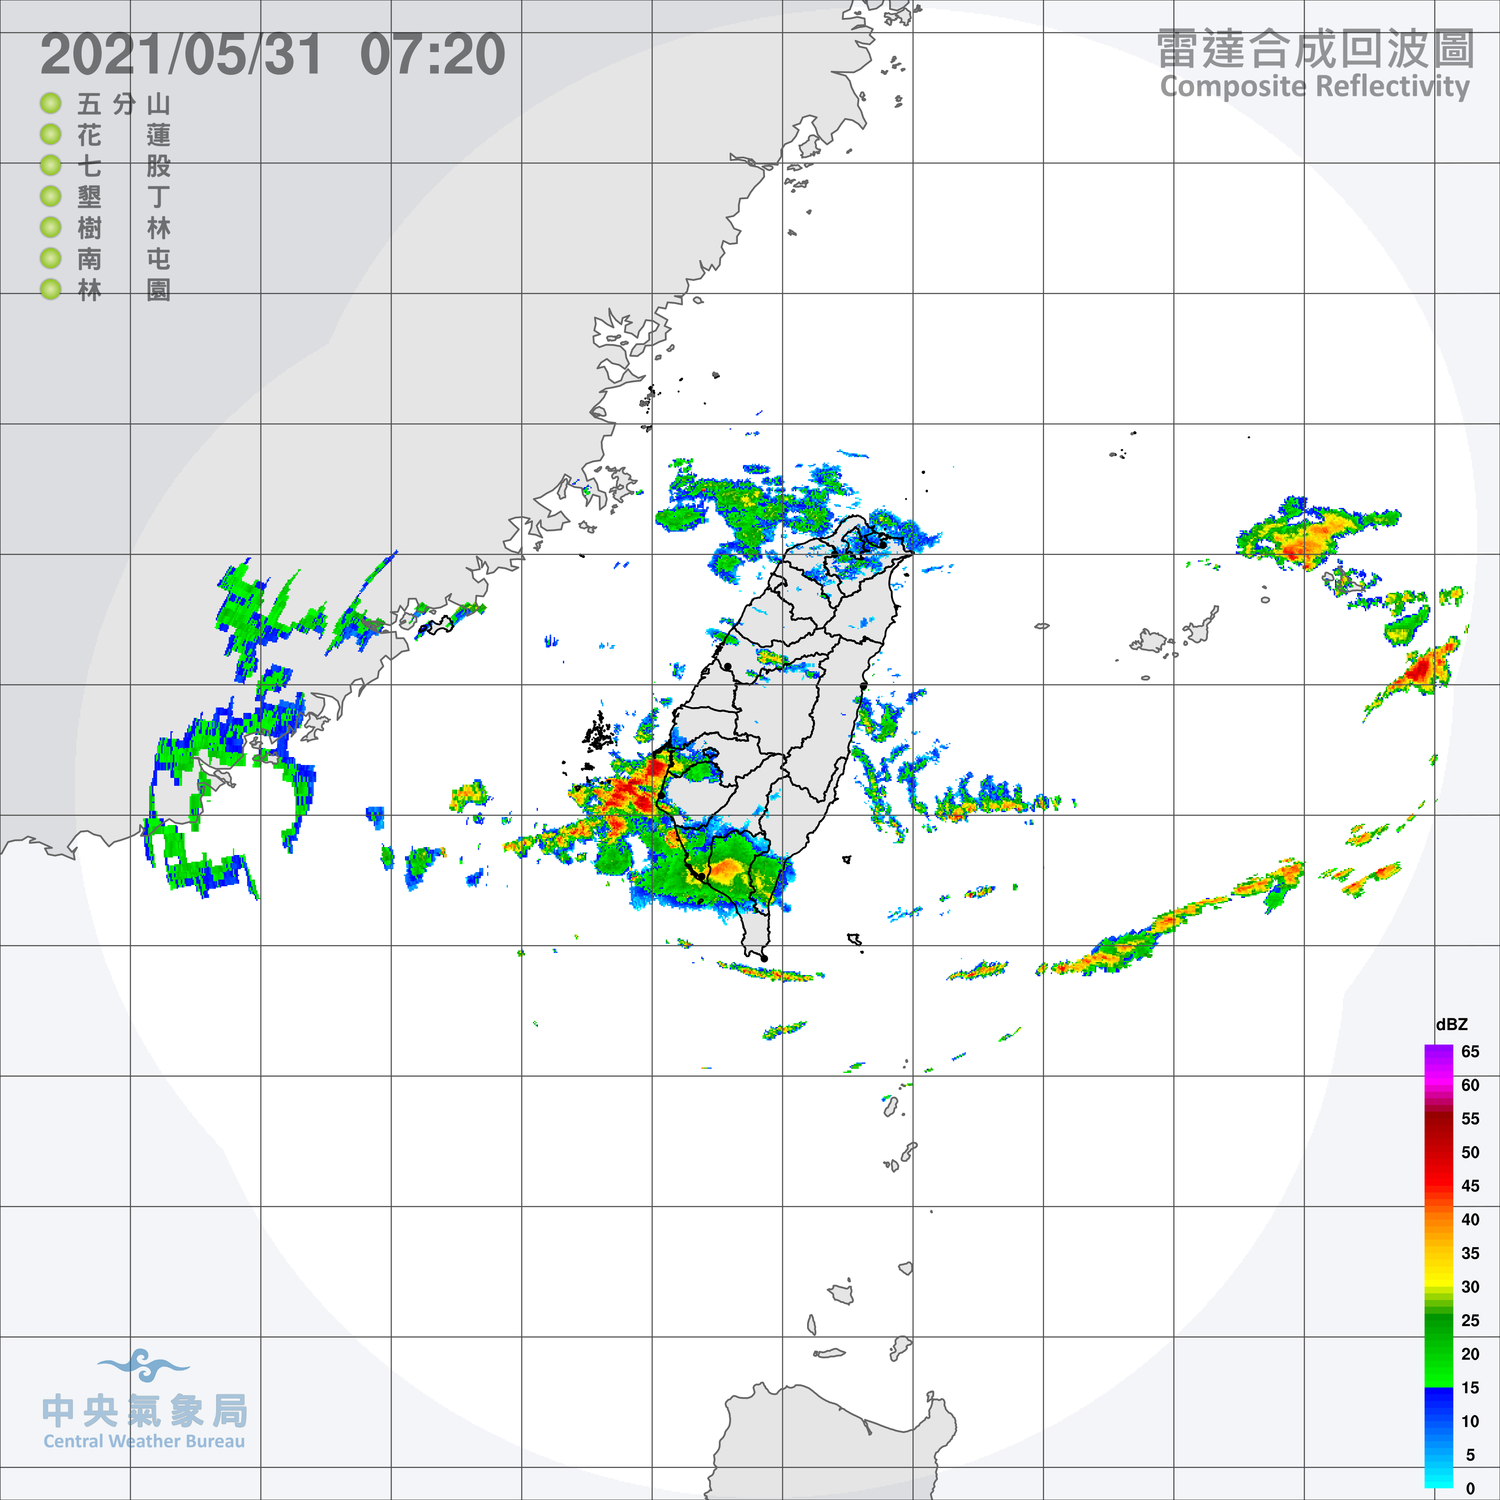 滯留鋒面雨彈預備備 準彩雲颱風還在東南海面飄